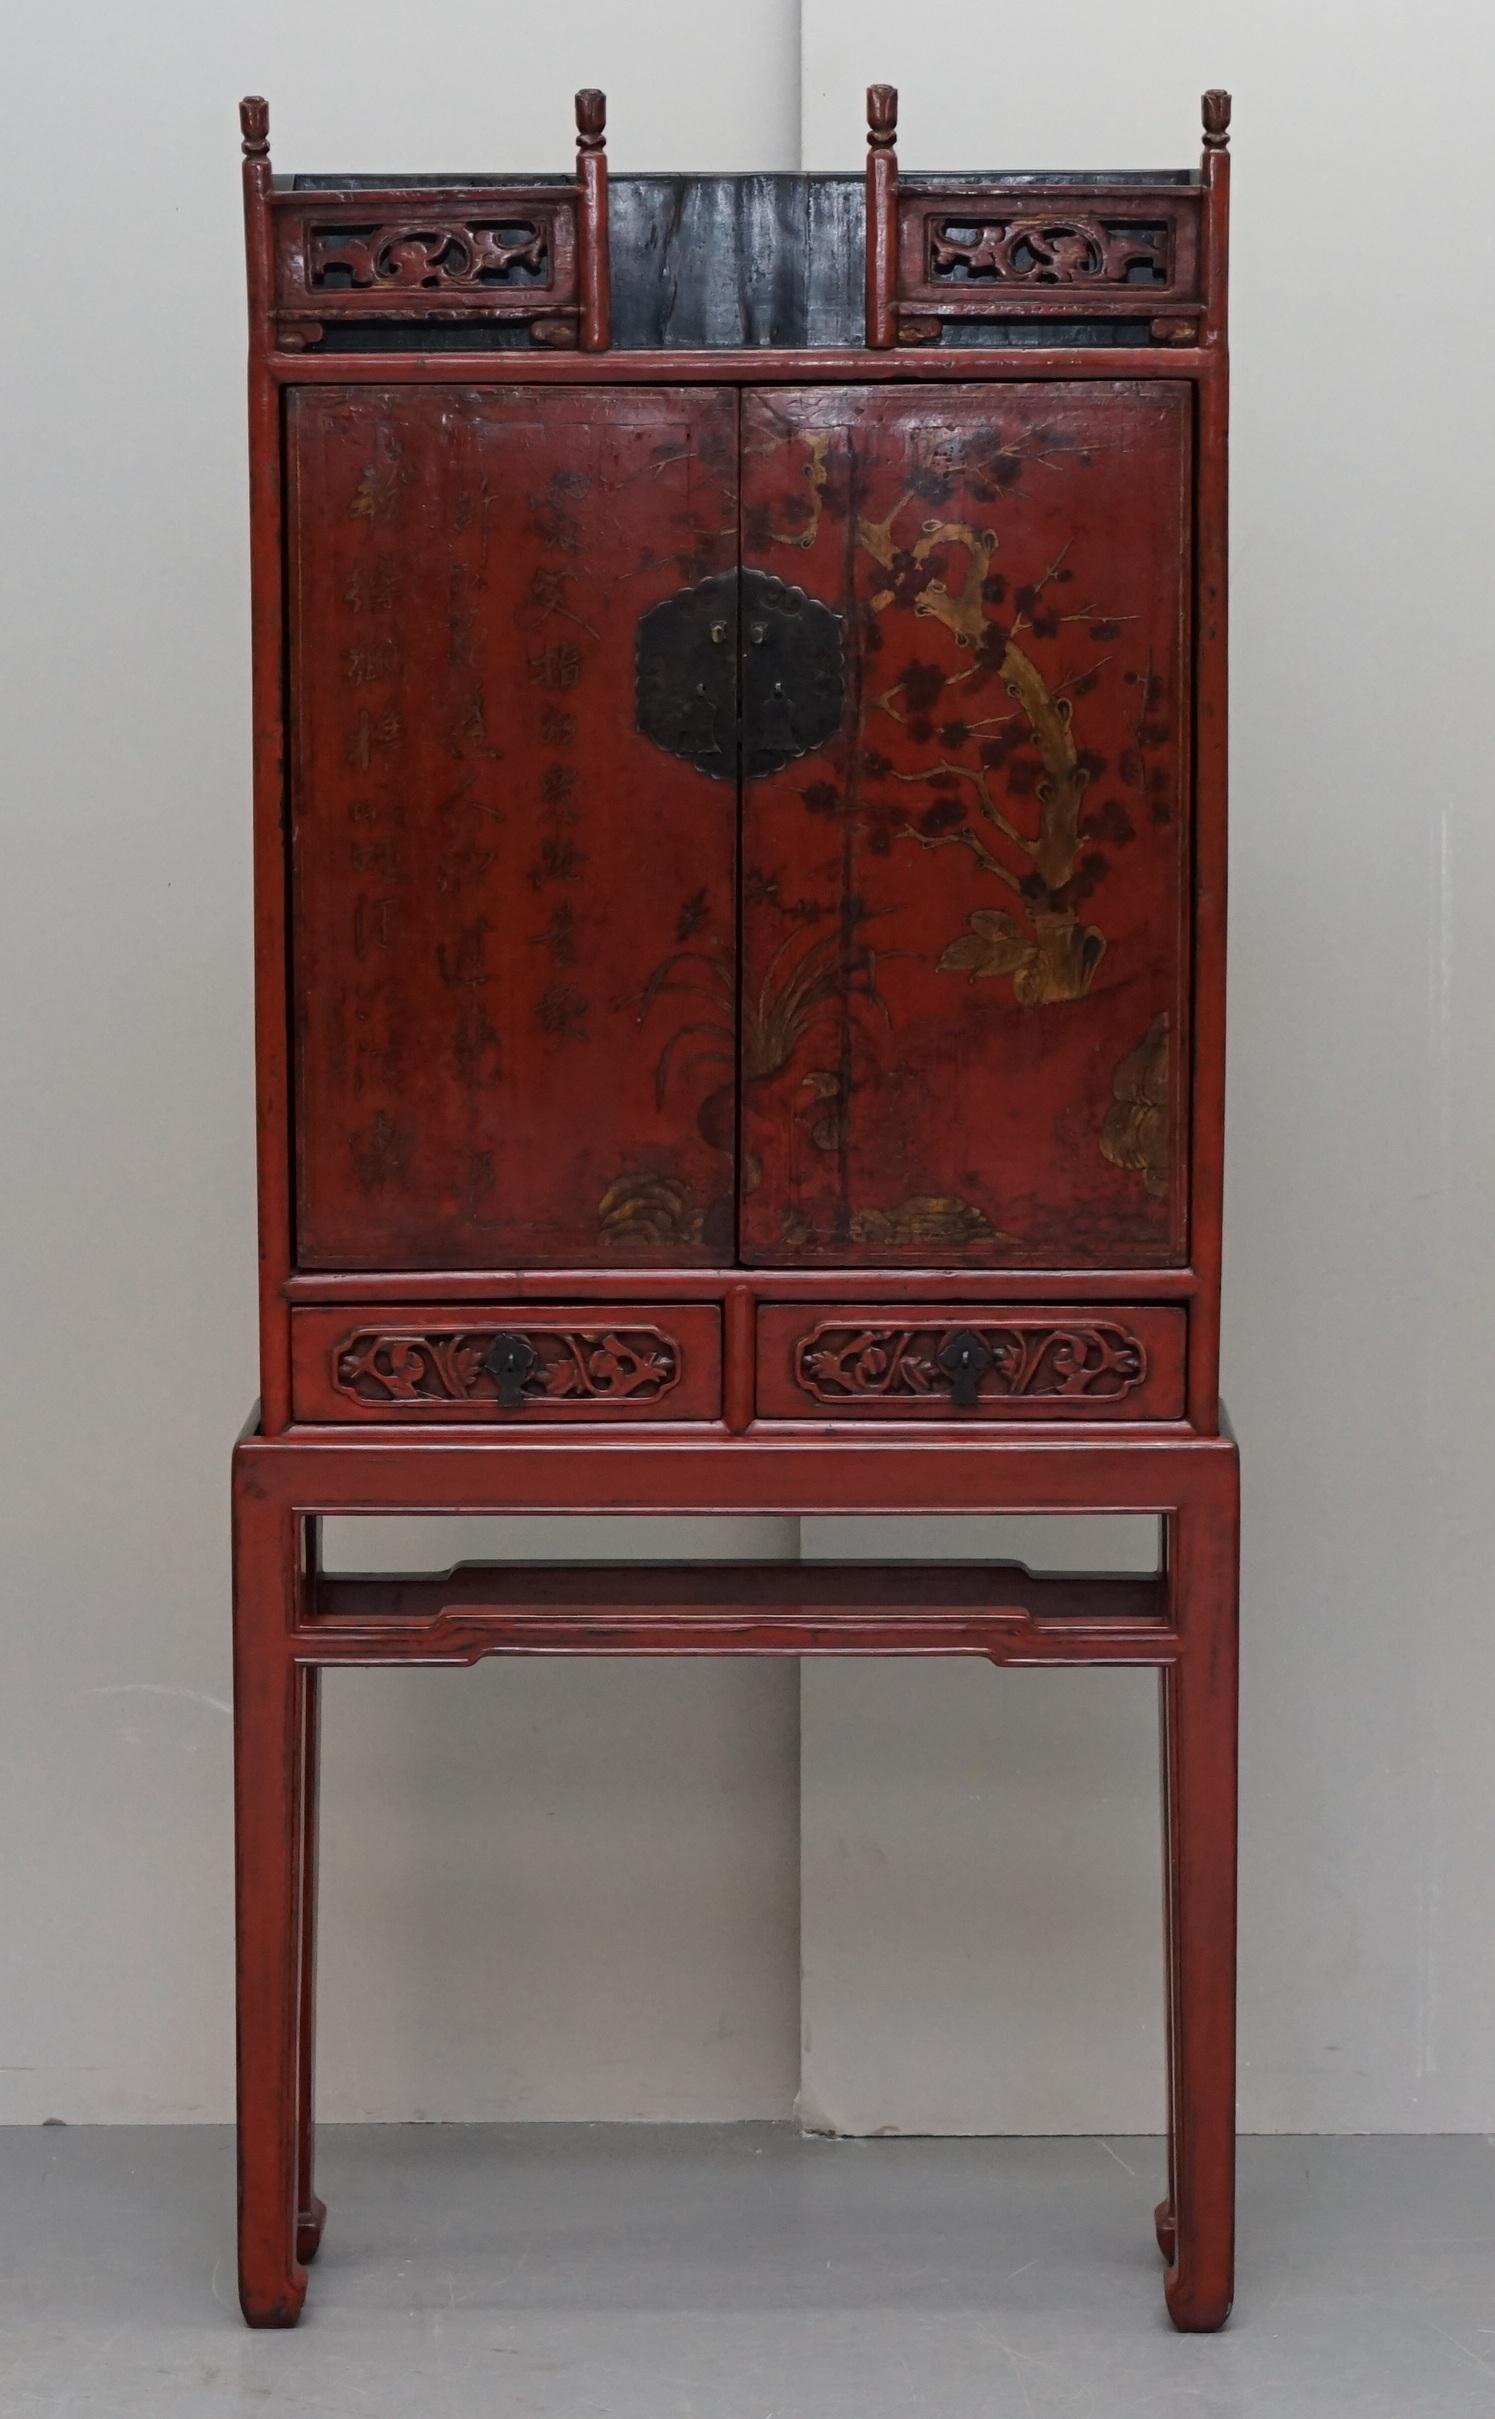 Wir freuen uns, diesen exquisiten und äußerst seltenen chinesischen Rotlackschrank aus dem 19. Jahrhundert zum Verkauf anbieten zu können.

Ein schönes und dekoratives Stück, um 1860-1880, handbemalt und mit mehreren Schichten lackiert. Dieses Stück